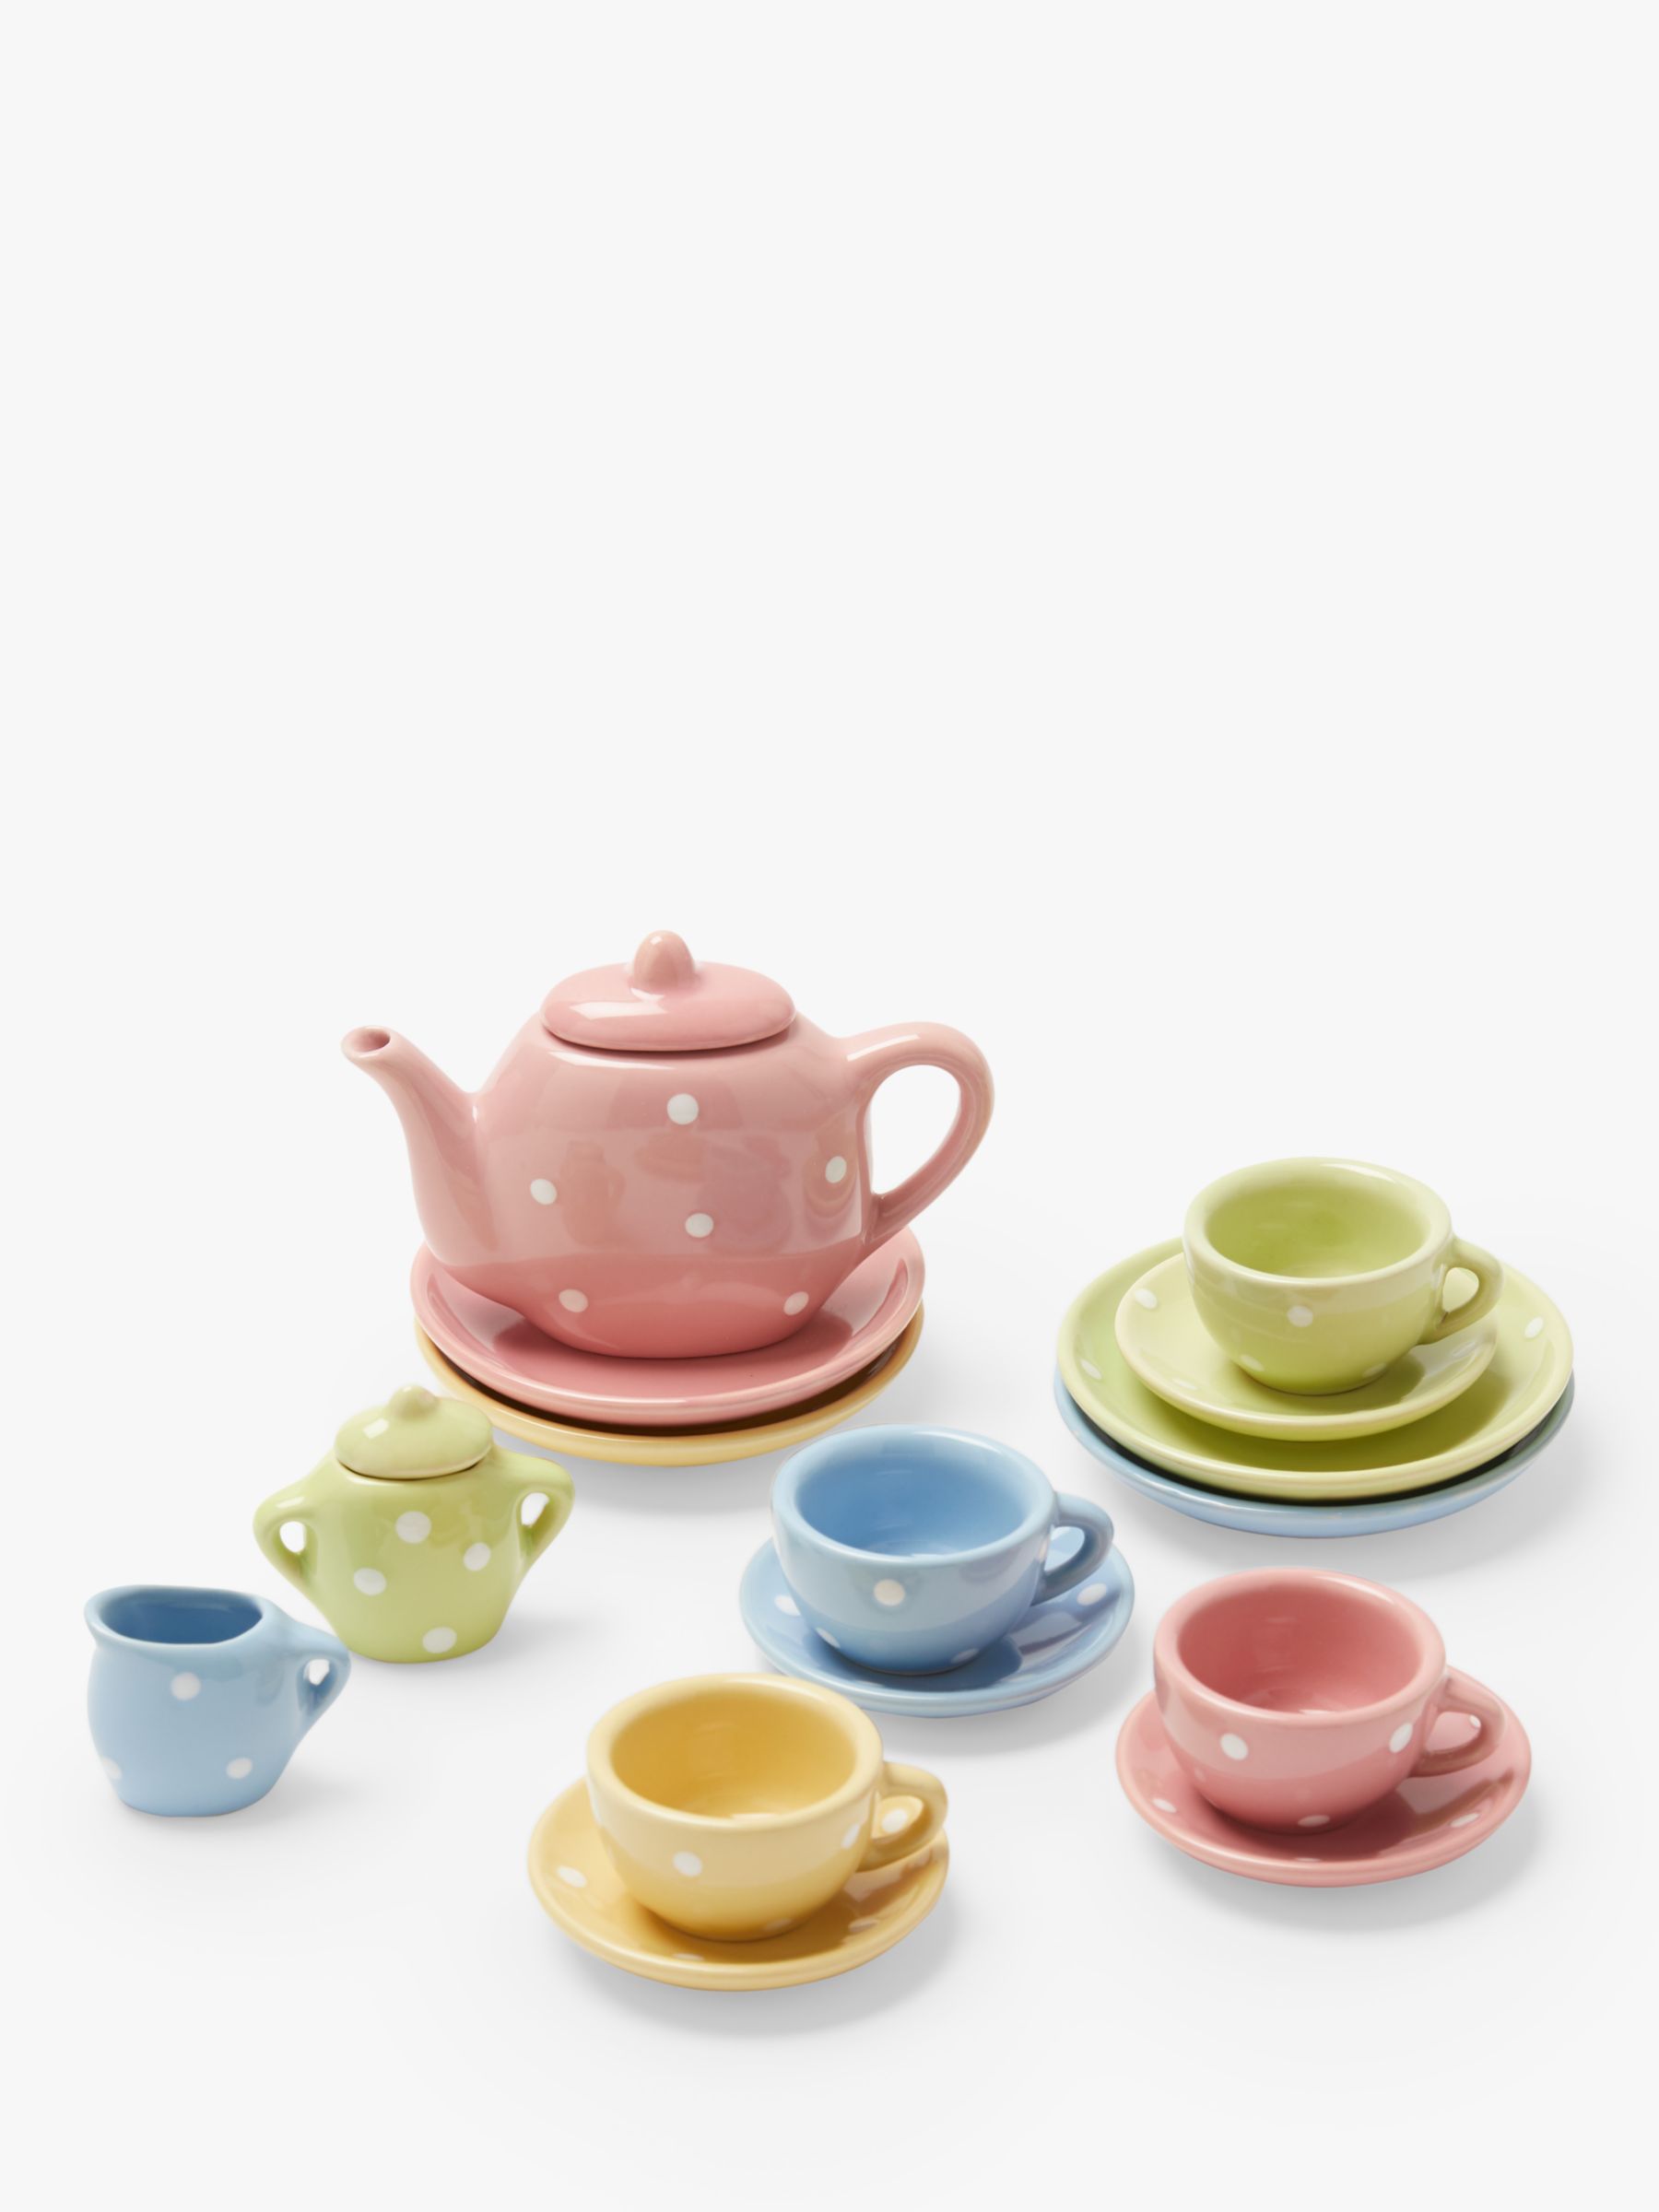 ceramic toy tea set